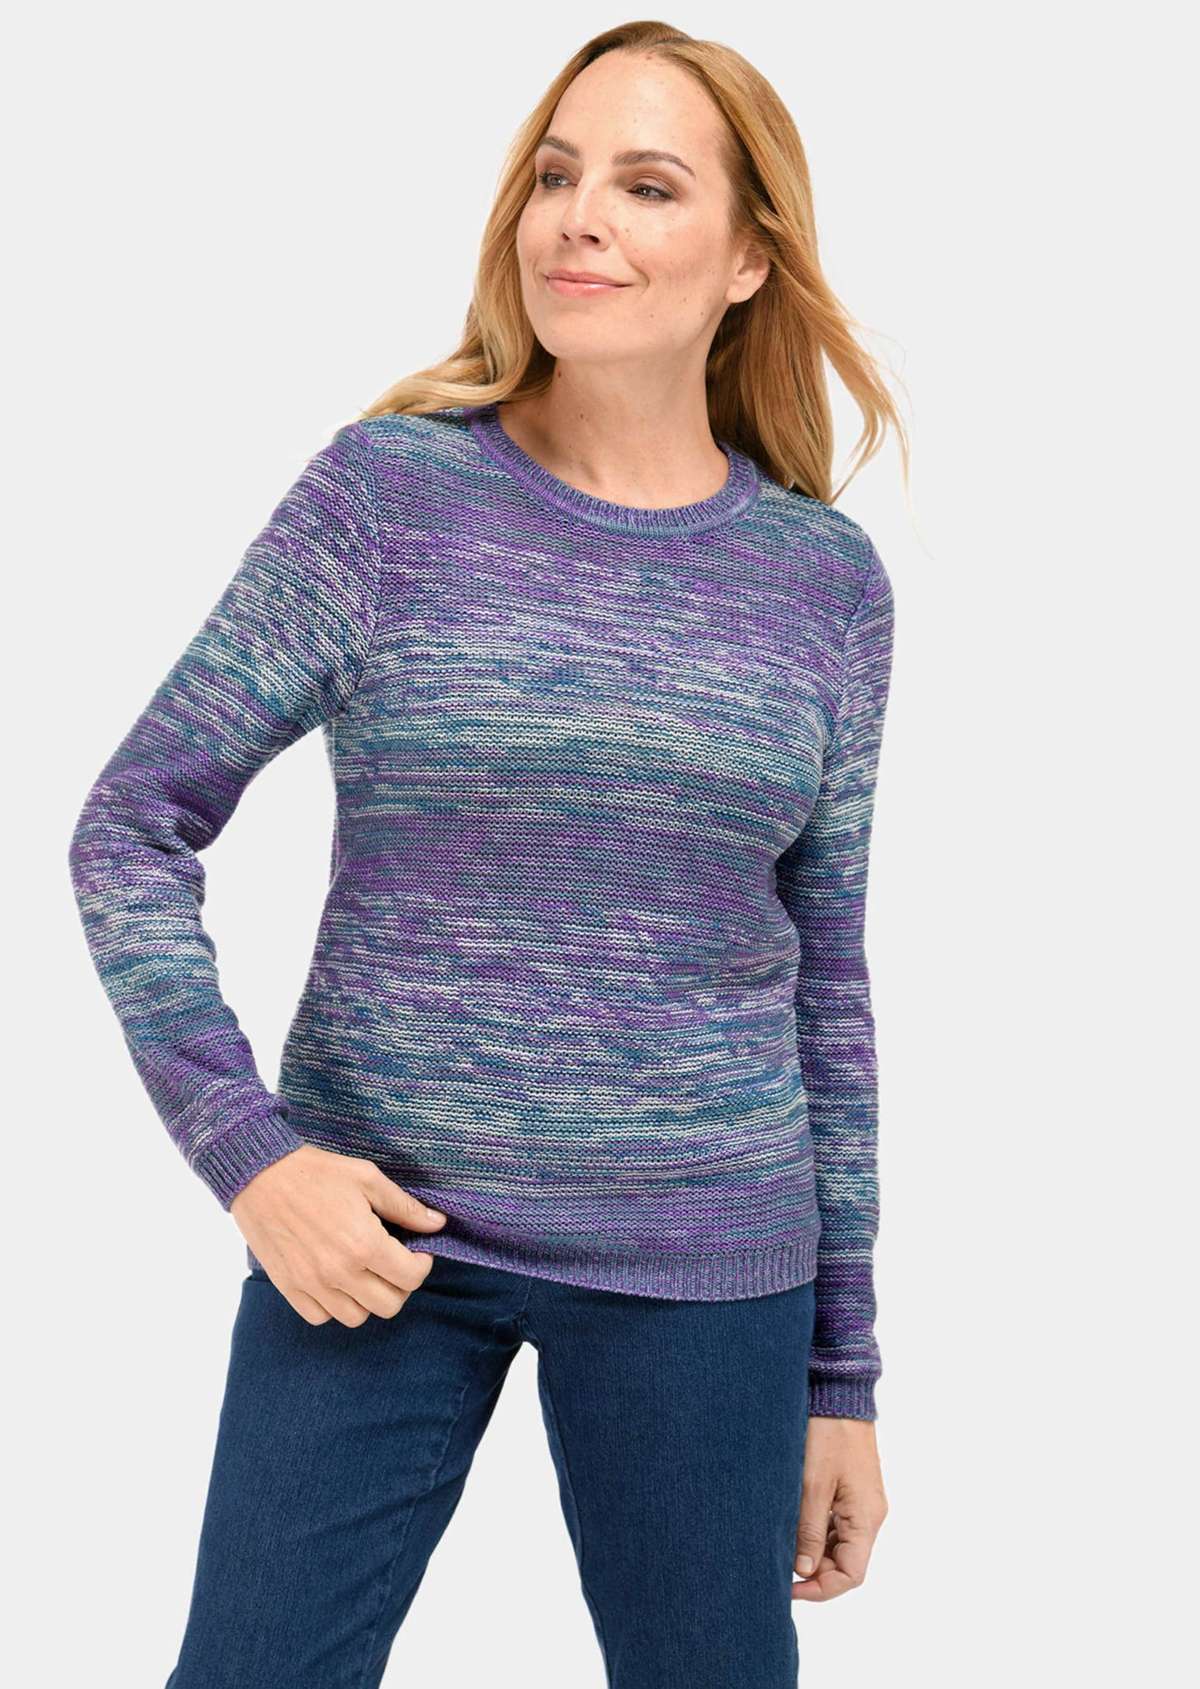 Многоцветный свитер с освежающим цветовым градиентом